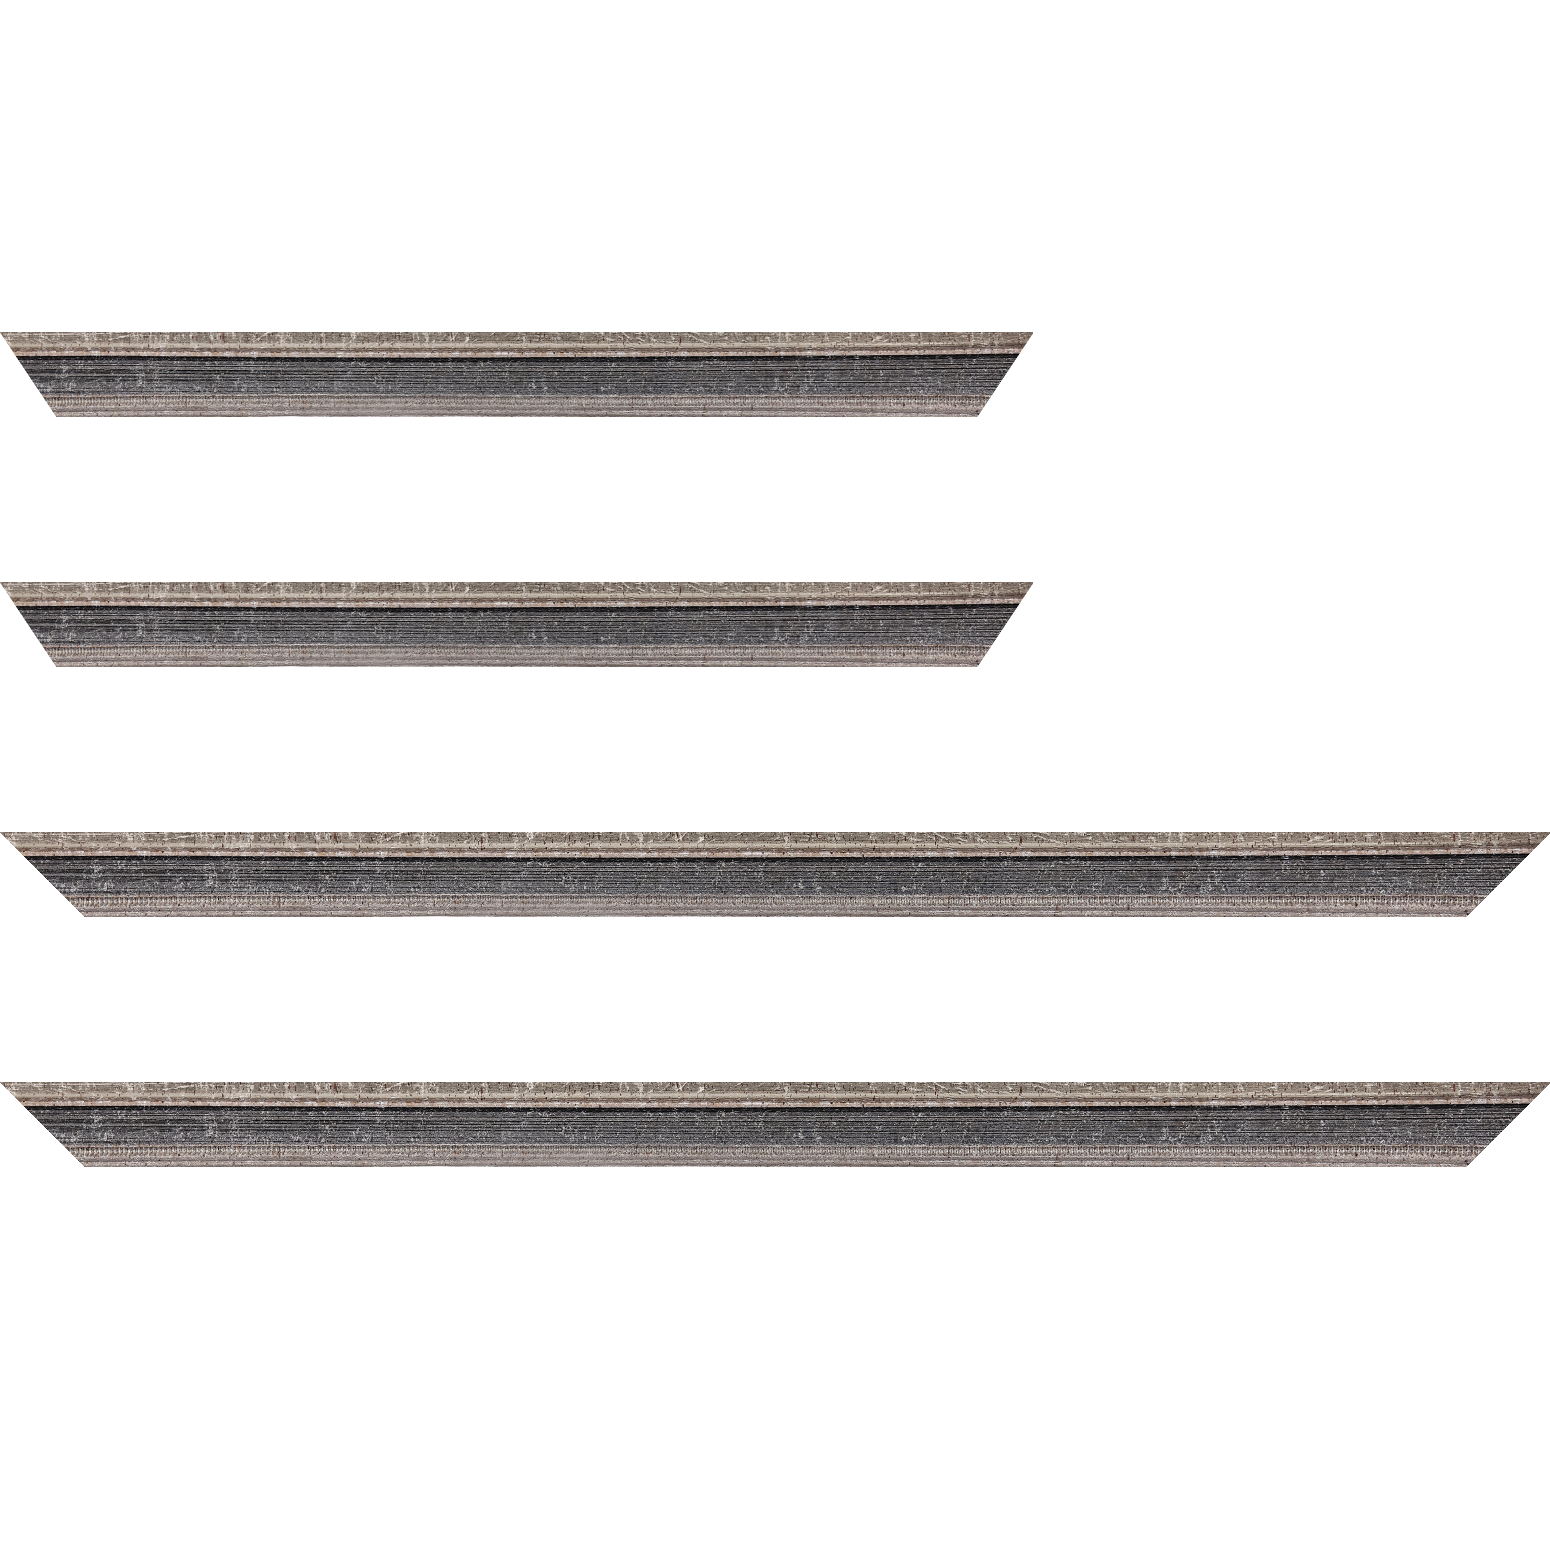 Baguette bois profil incurvé largeur 2.4cm argent antique gorge gris noirci vieilli filet perle argent - 92x60